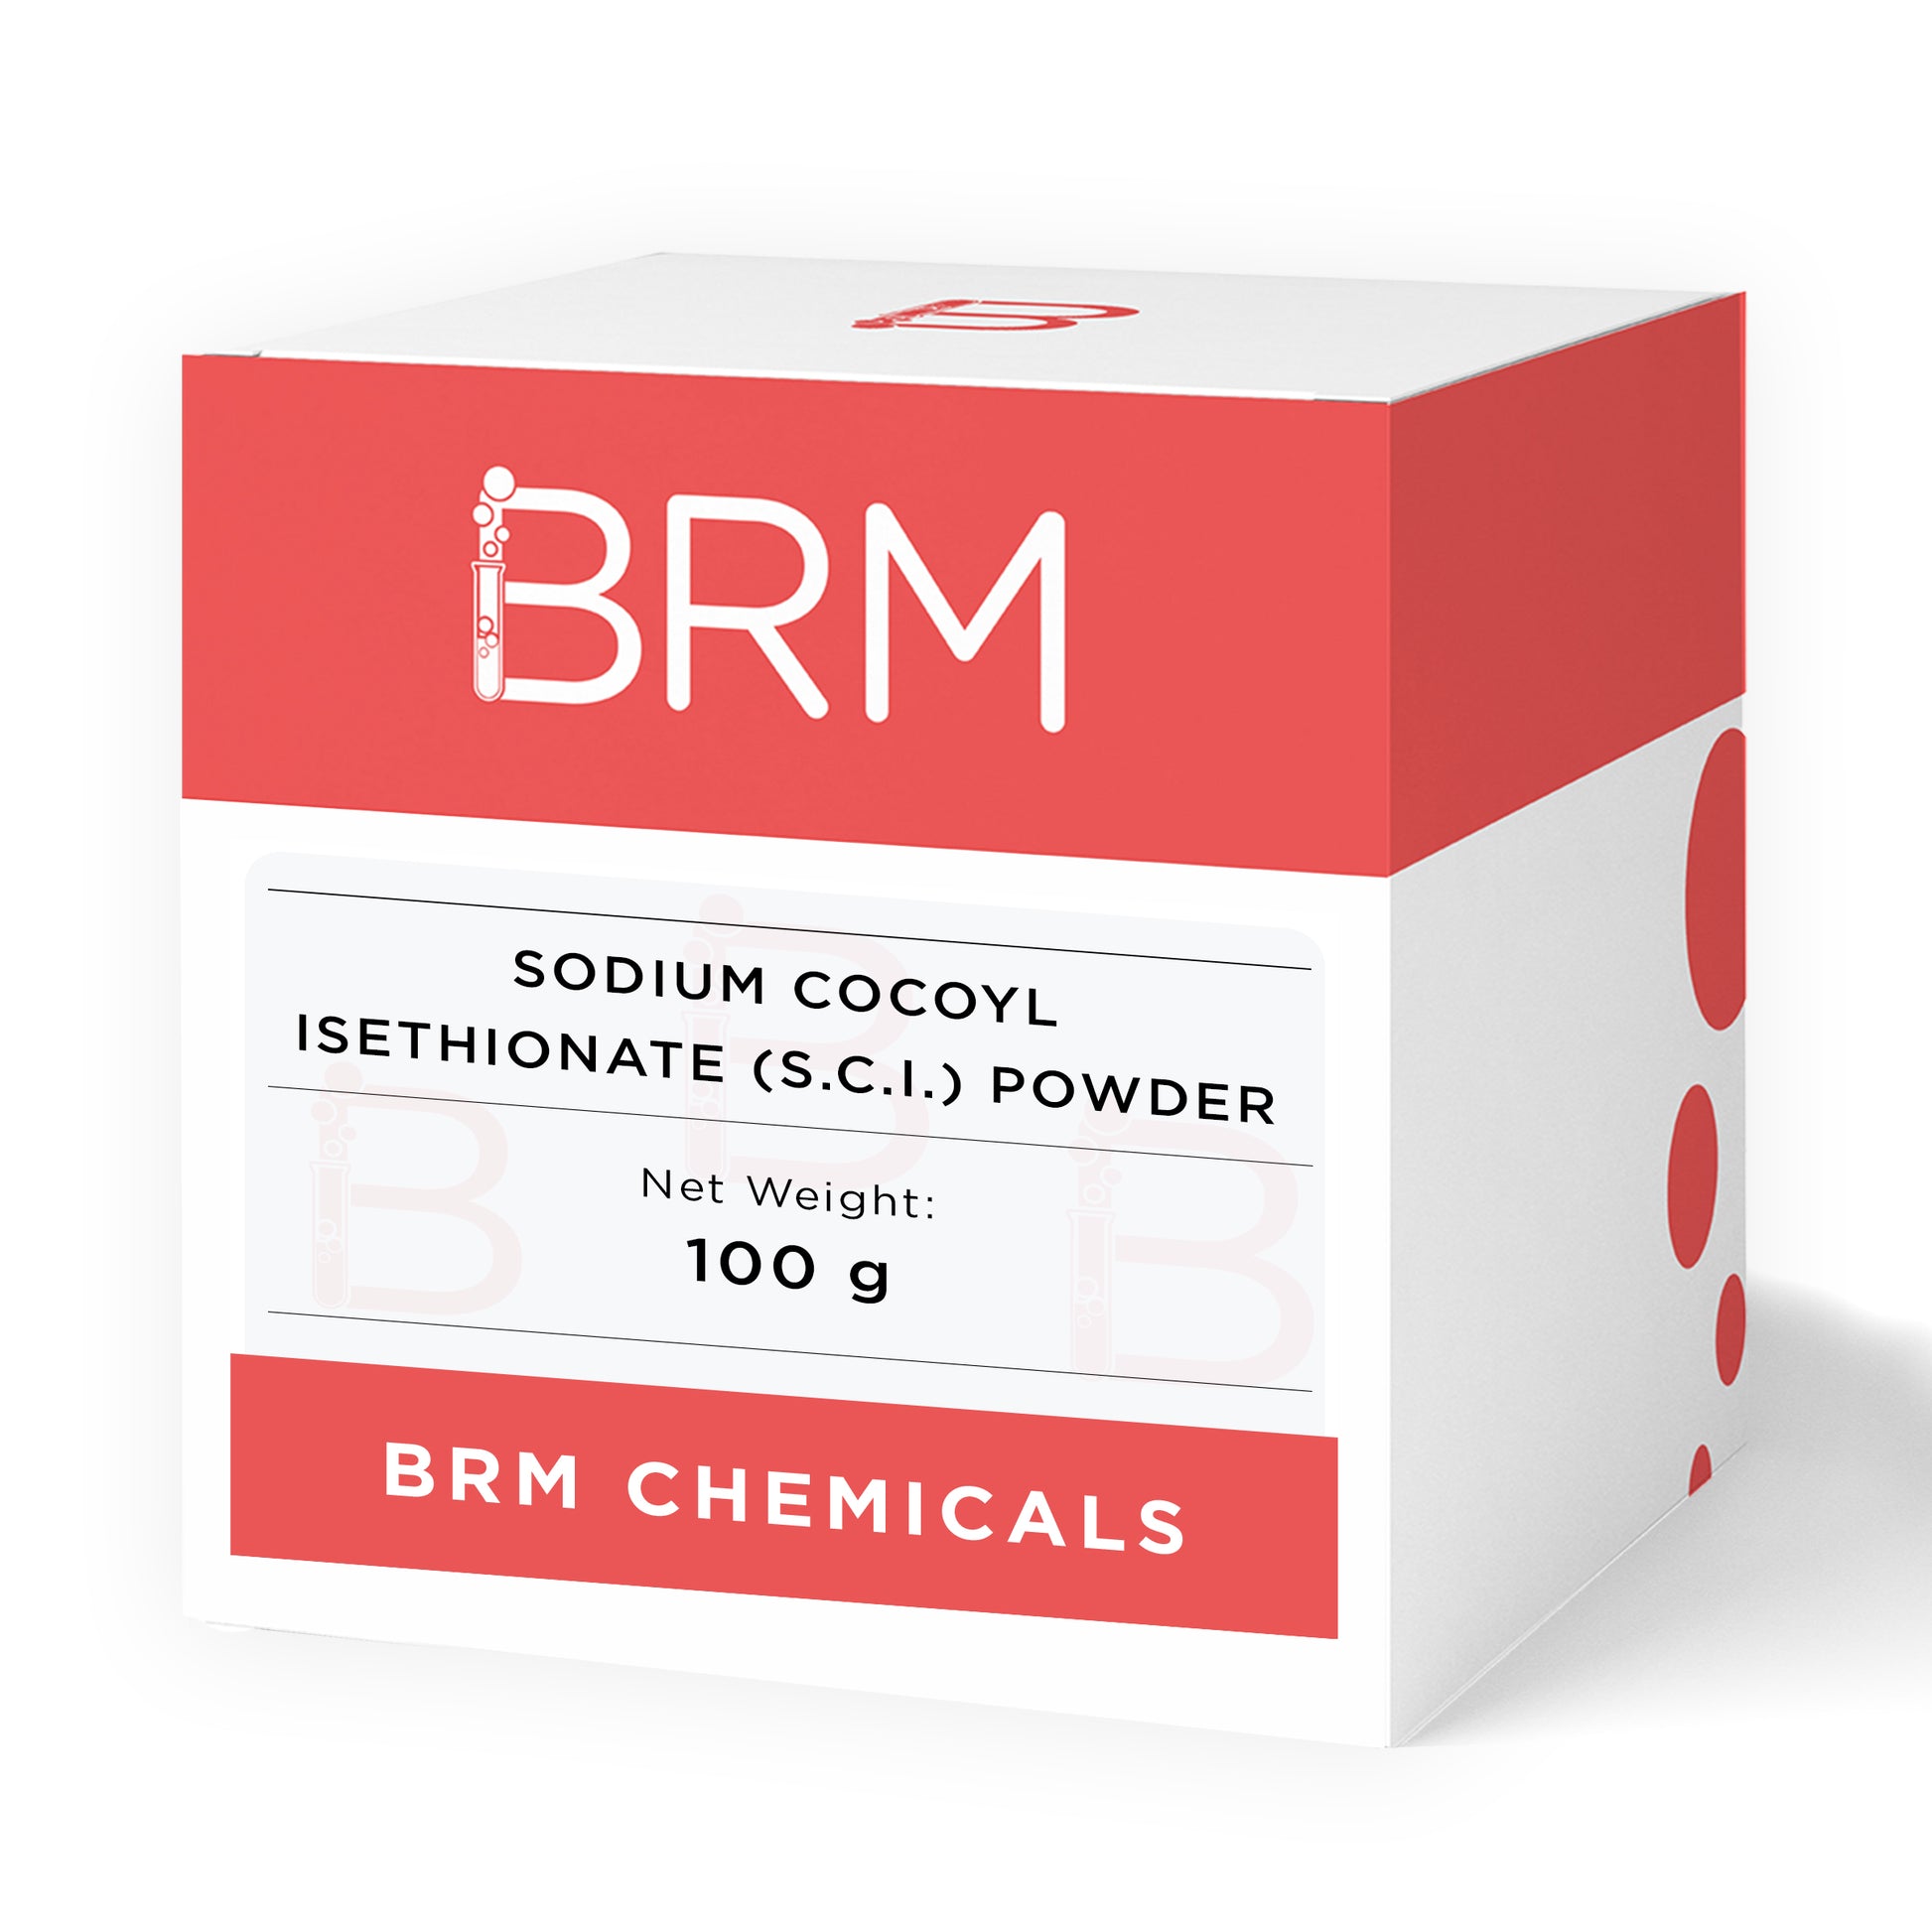 Sodium Cocoyl Isethionate – Janni Bars